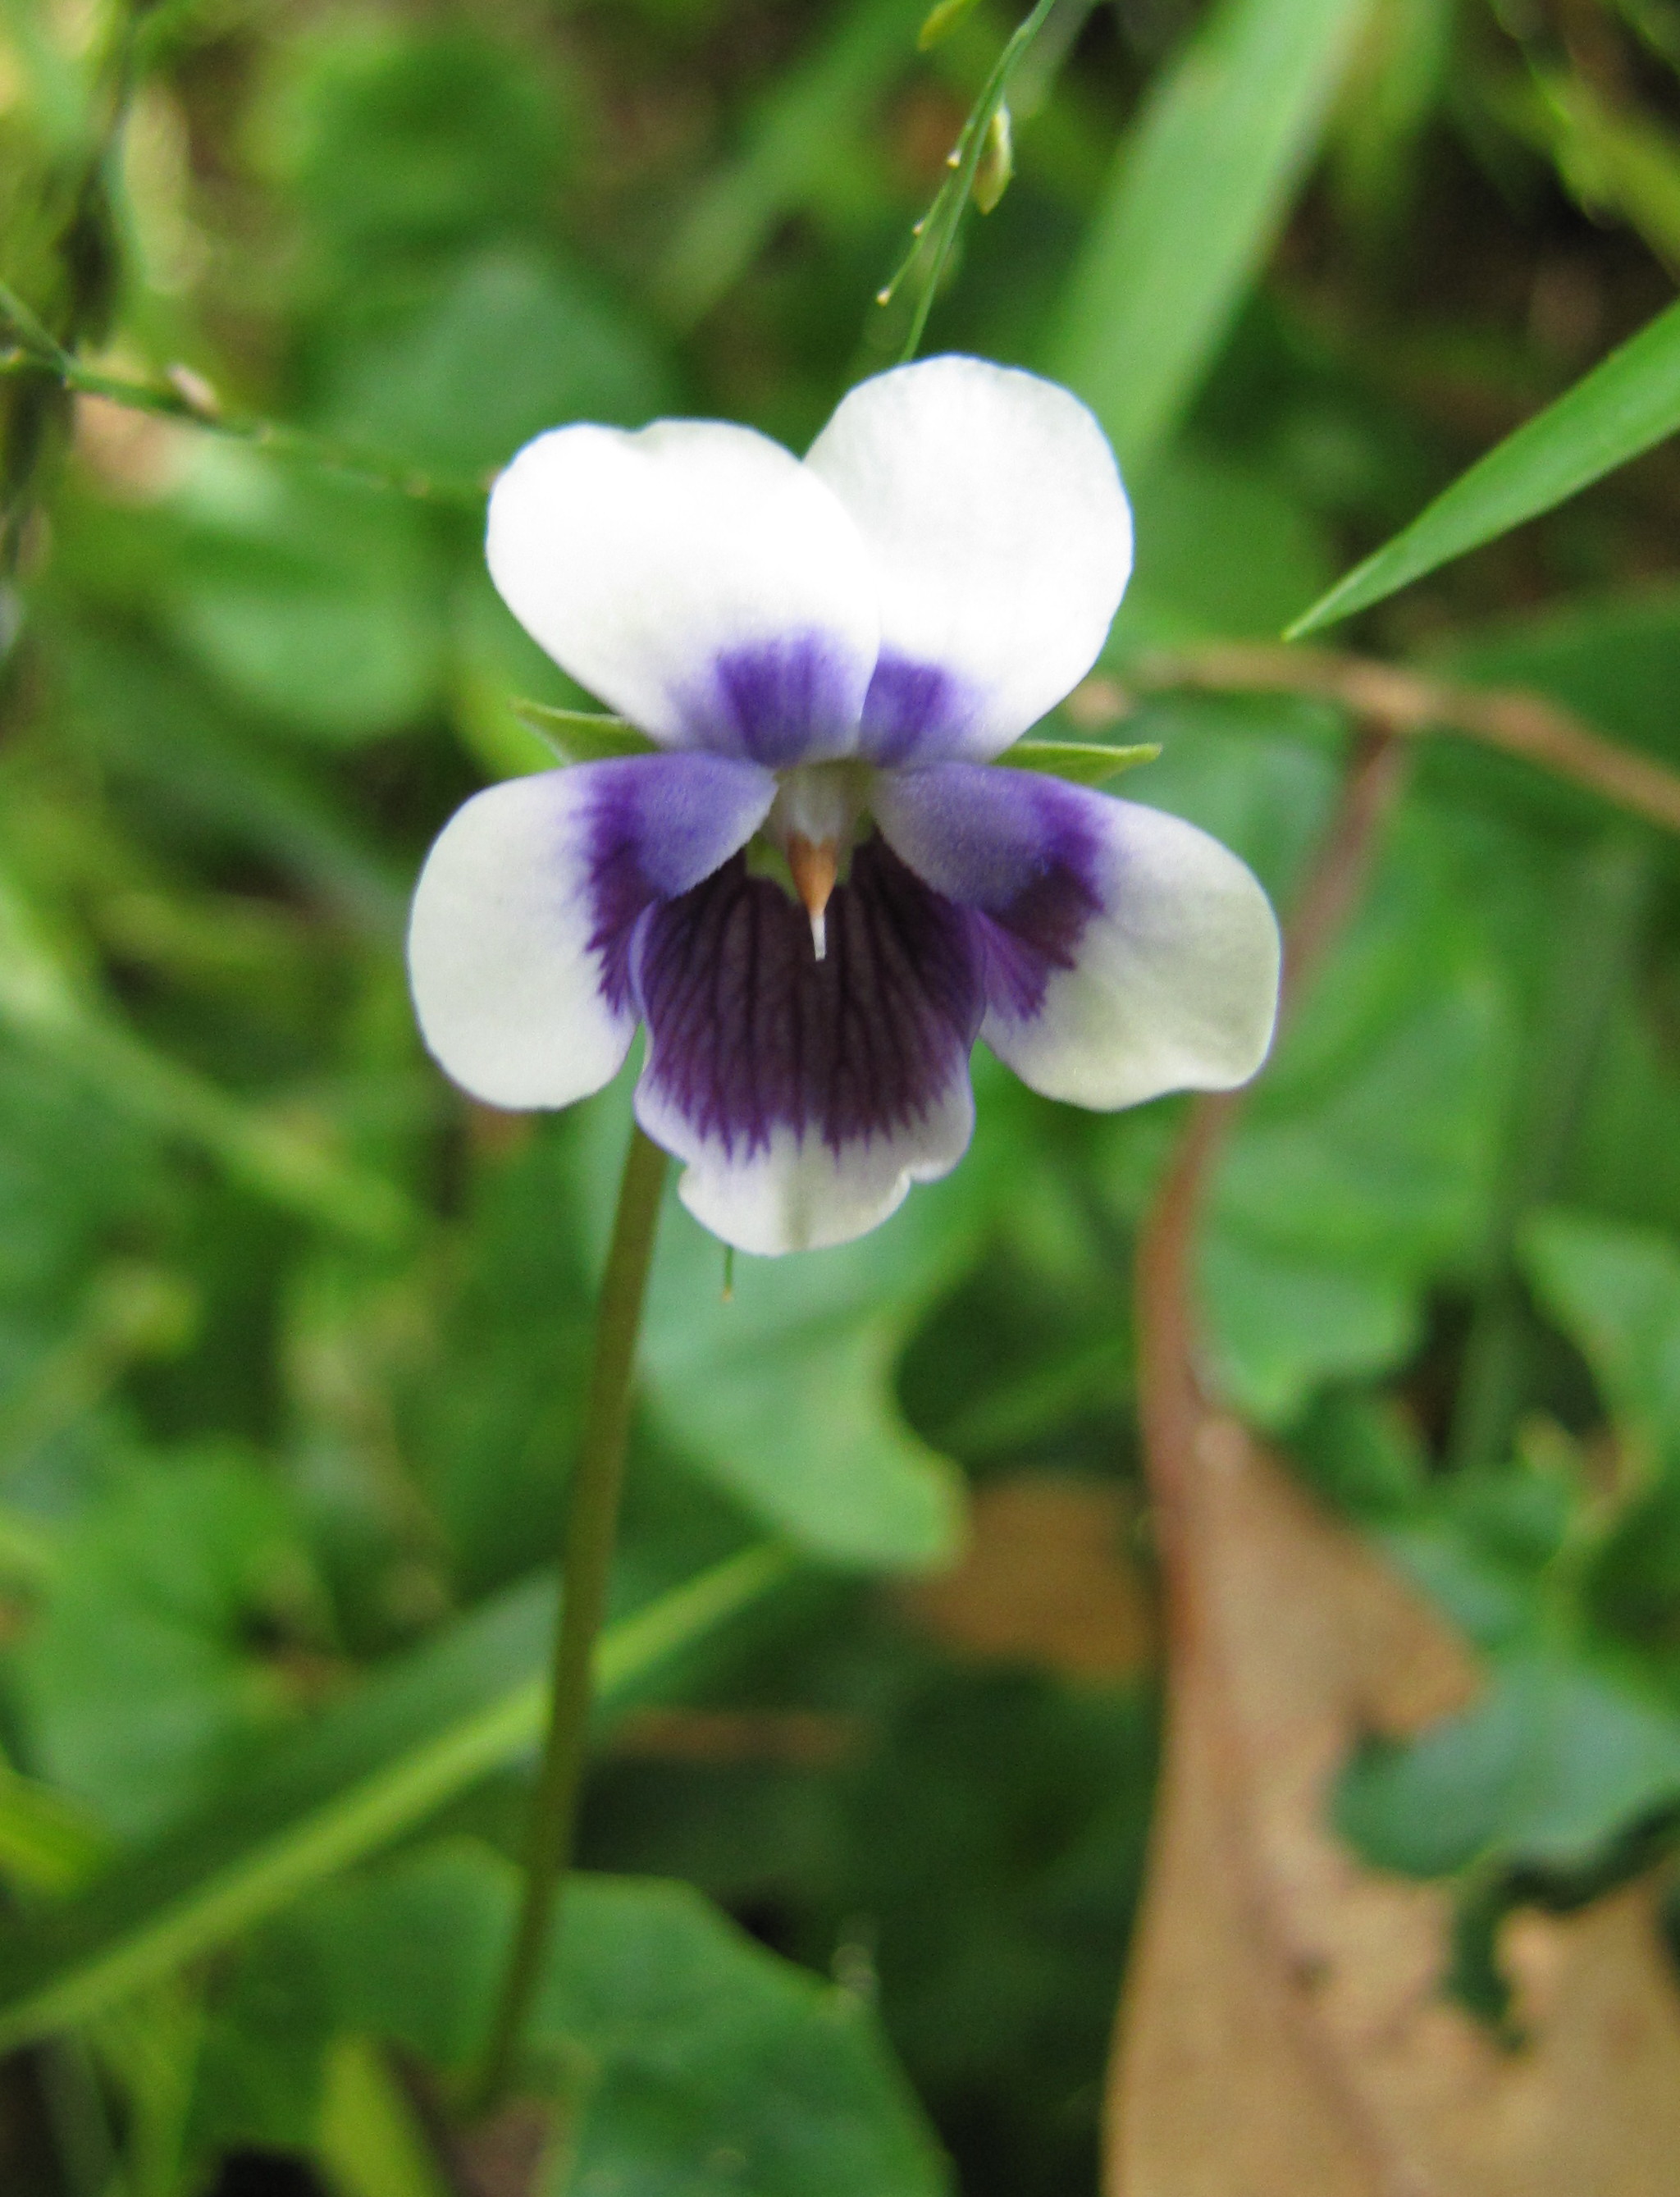 Native violet